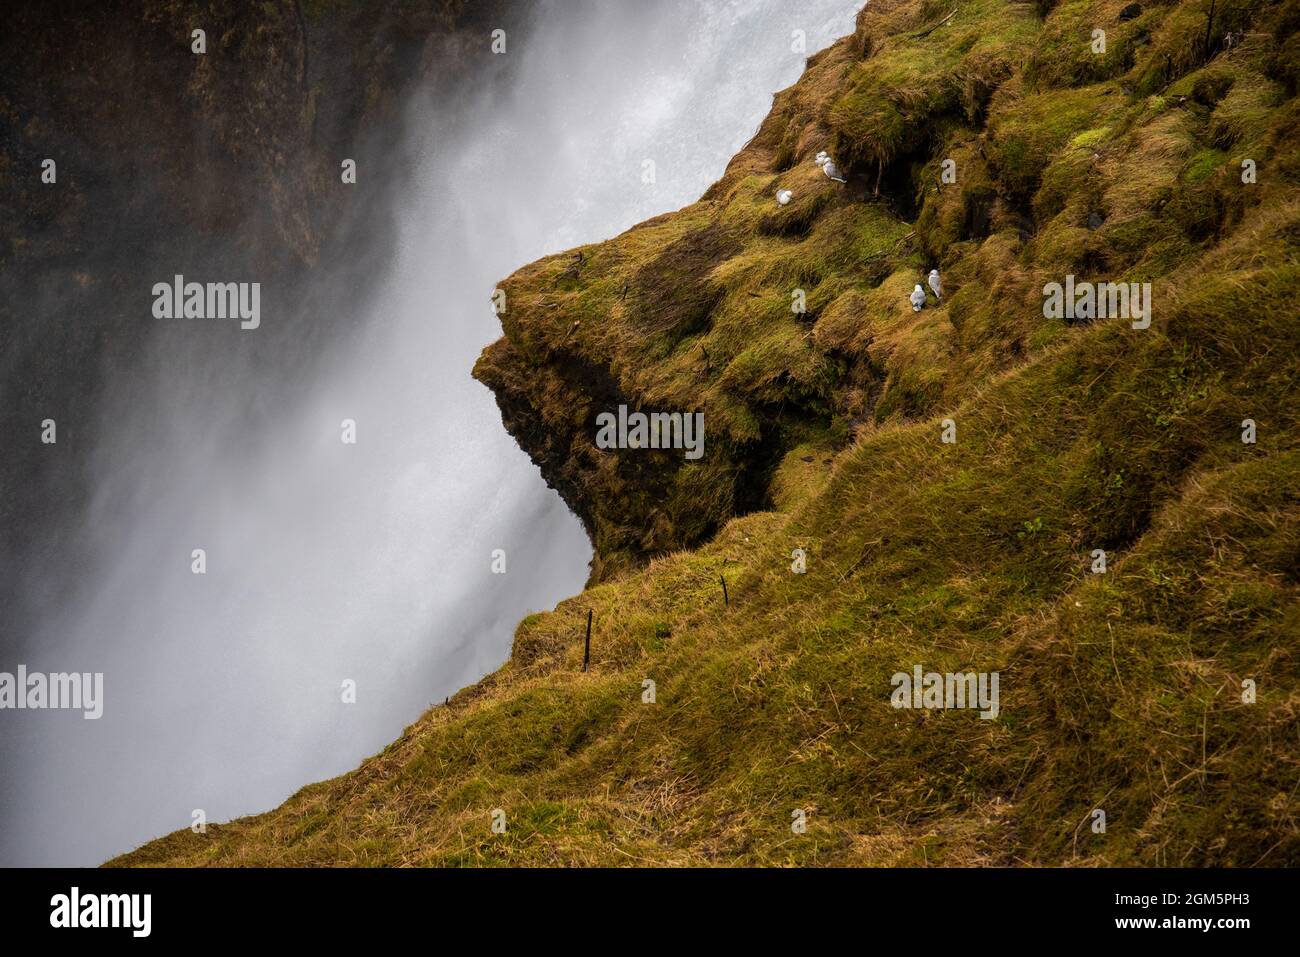 Riesiger isländischer Wasserfall von der Spitze einer moosigen Klippe. Stockfoto